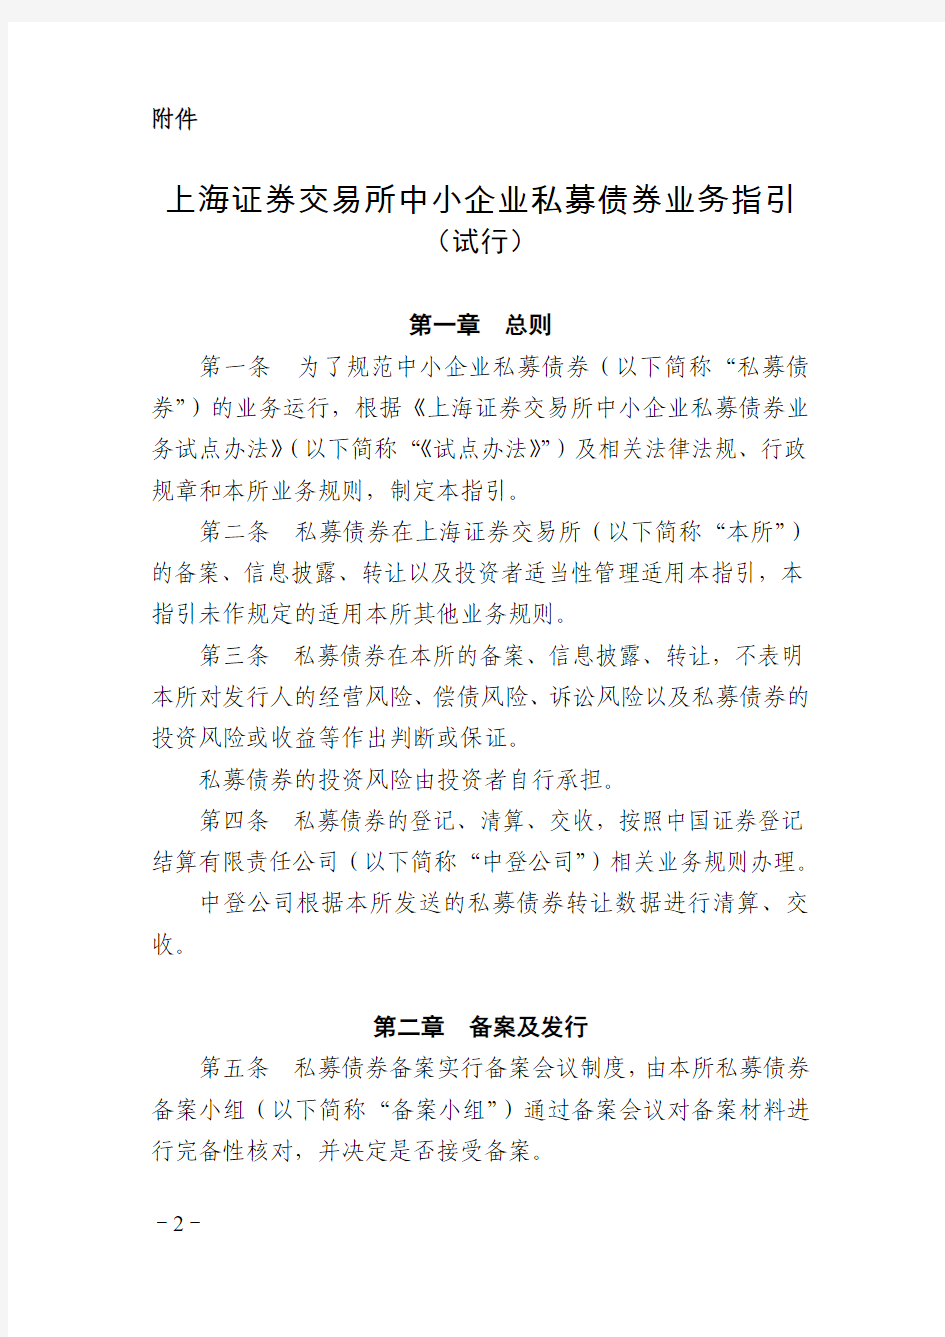 上海证券交易所中小企业私募债券业务指引(与深交所试点办法对比,批注版)